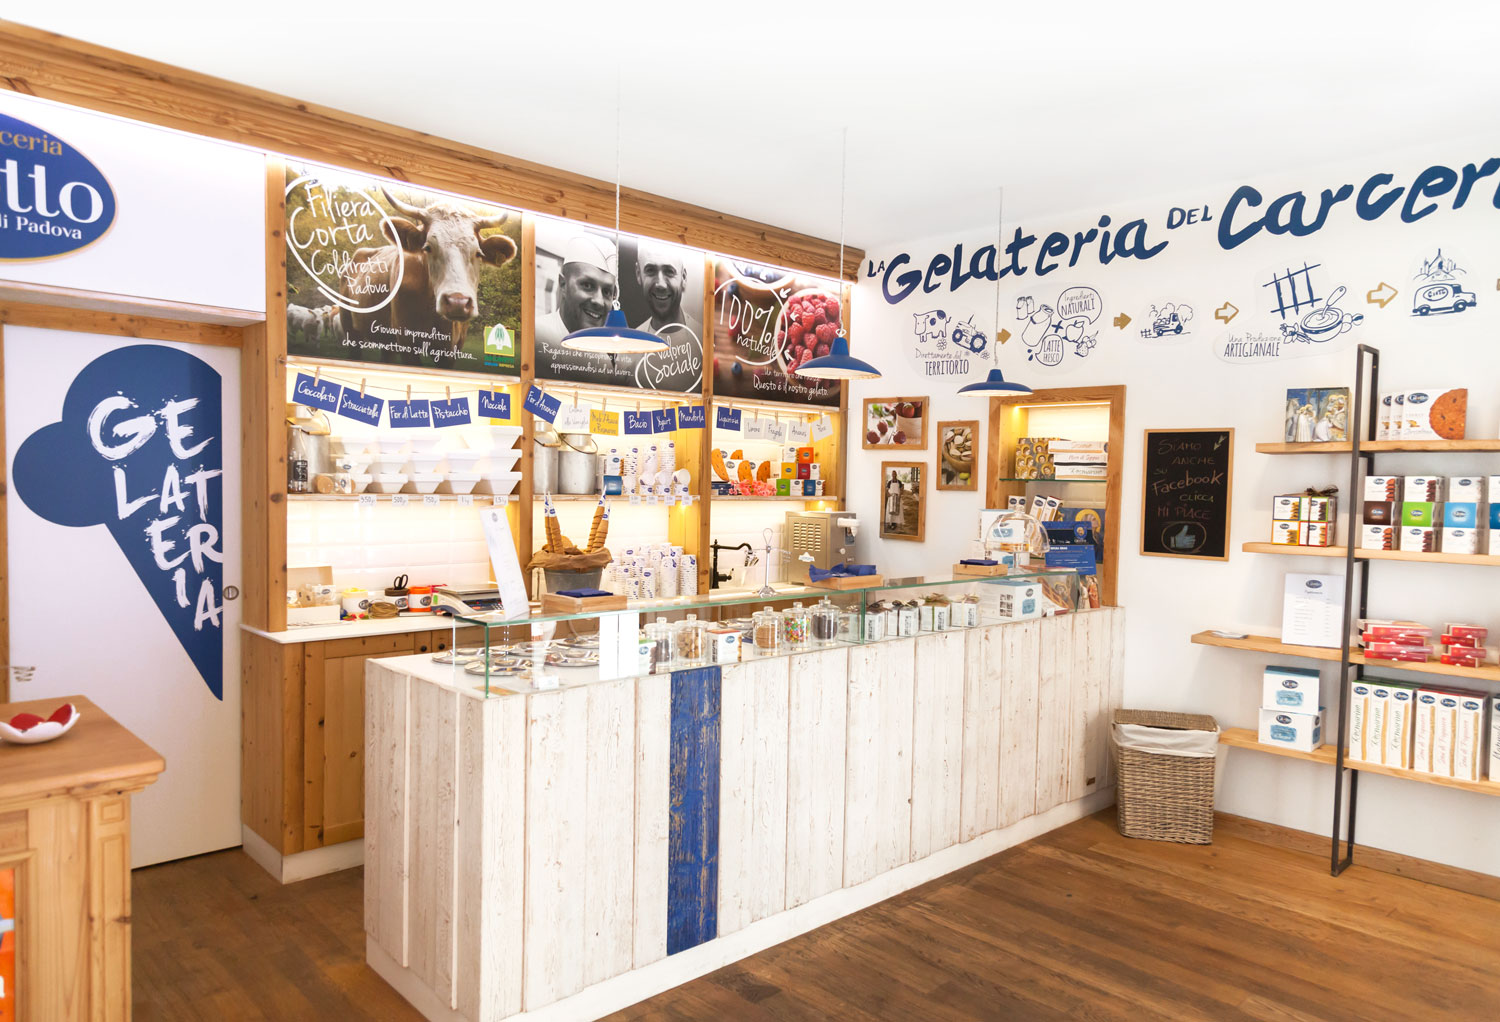 Giotto Ice Cream Shop Interior 01 By Silvia Sguotti On Dribbble